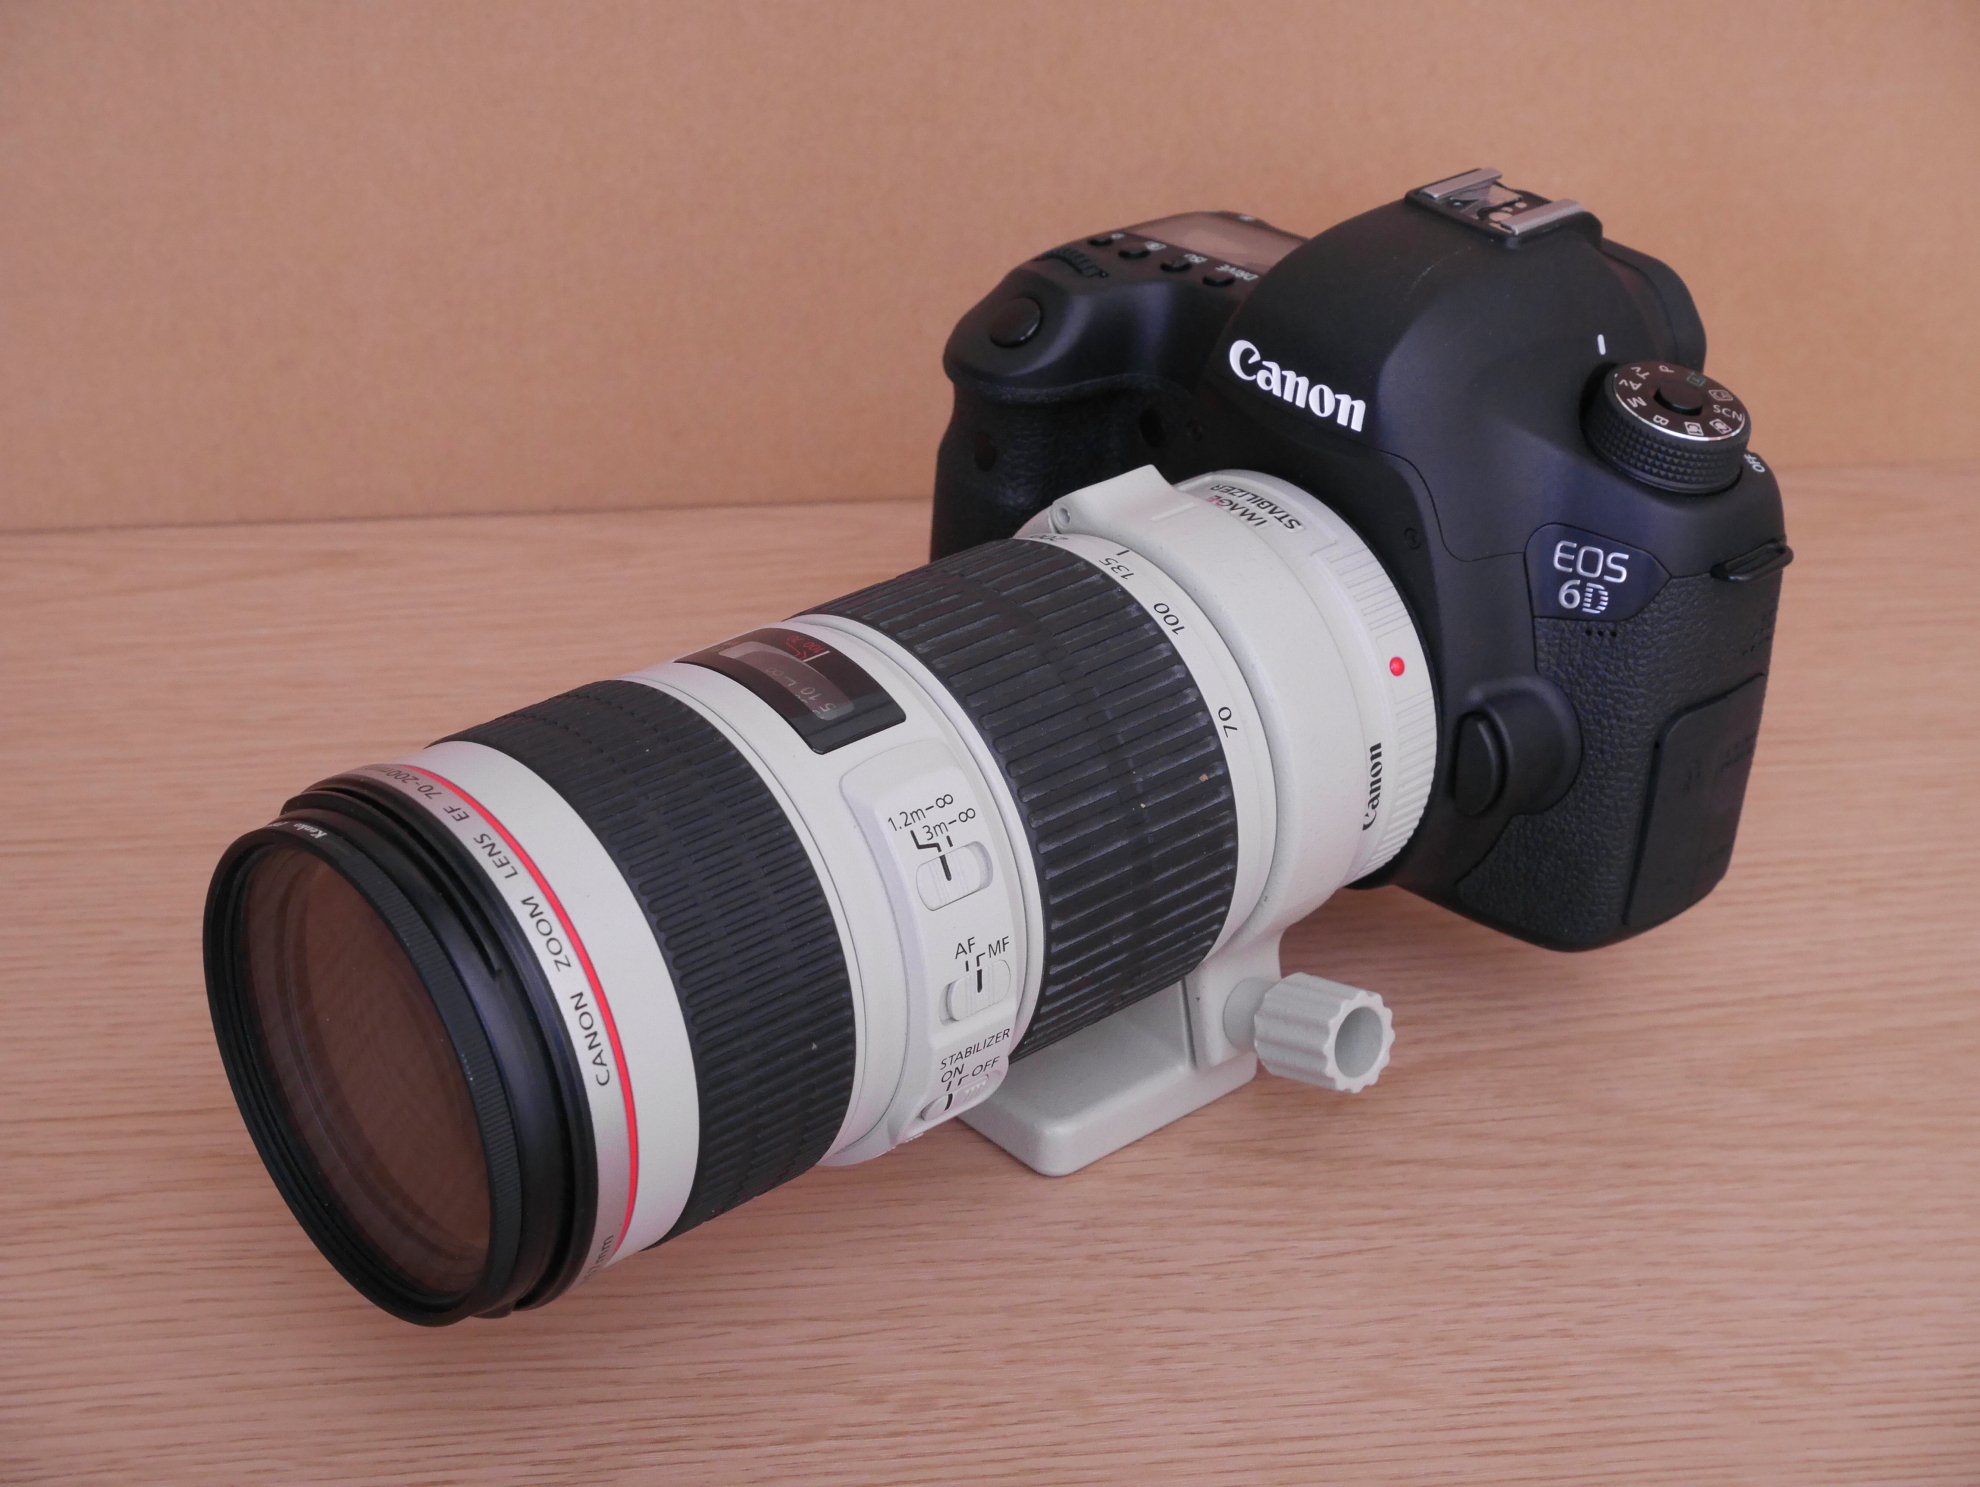 Canon 望遠ズームレンズ EF70-200mm F4L IS USM フルサイズ対応 - 交換